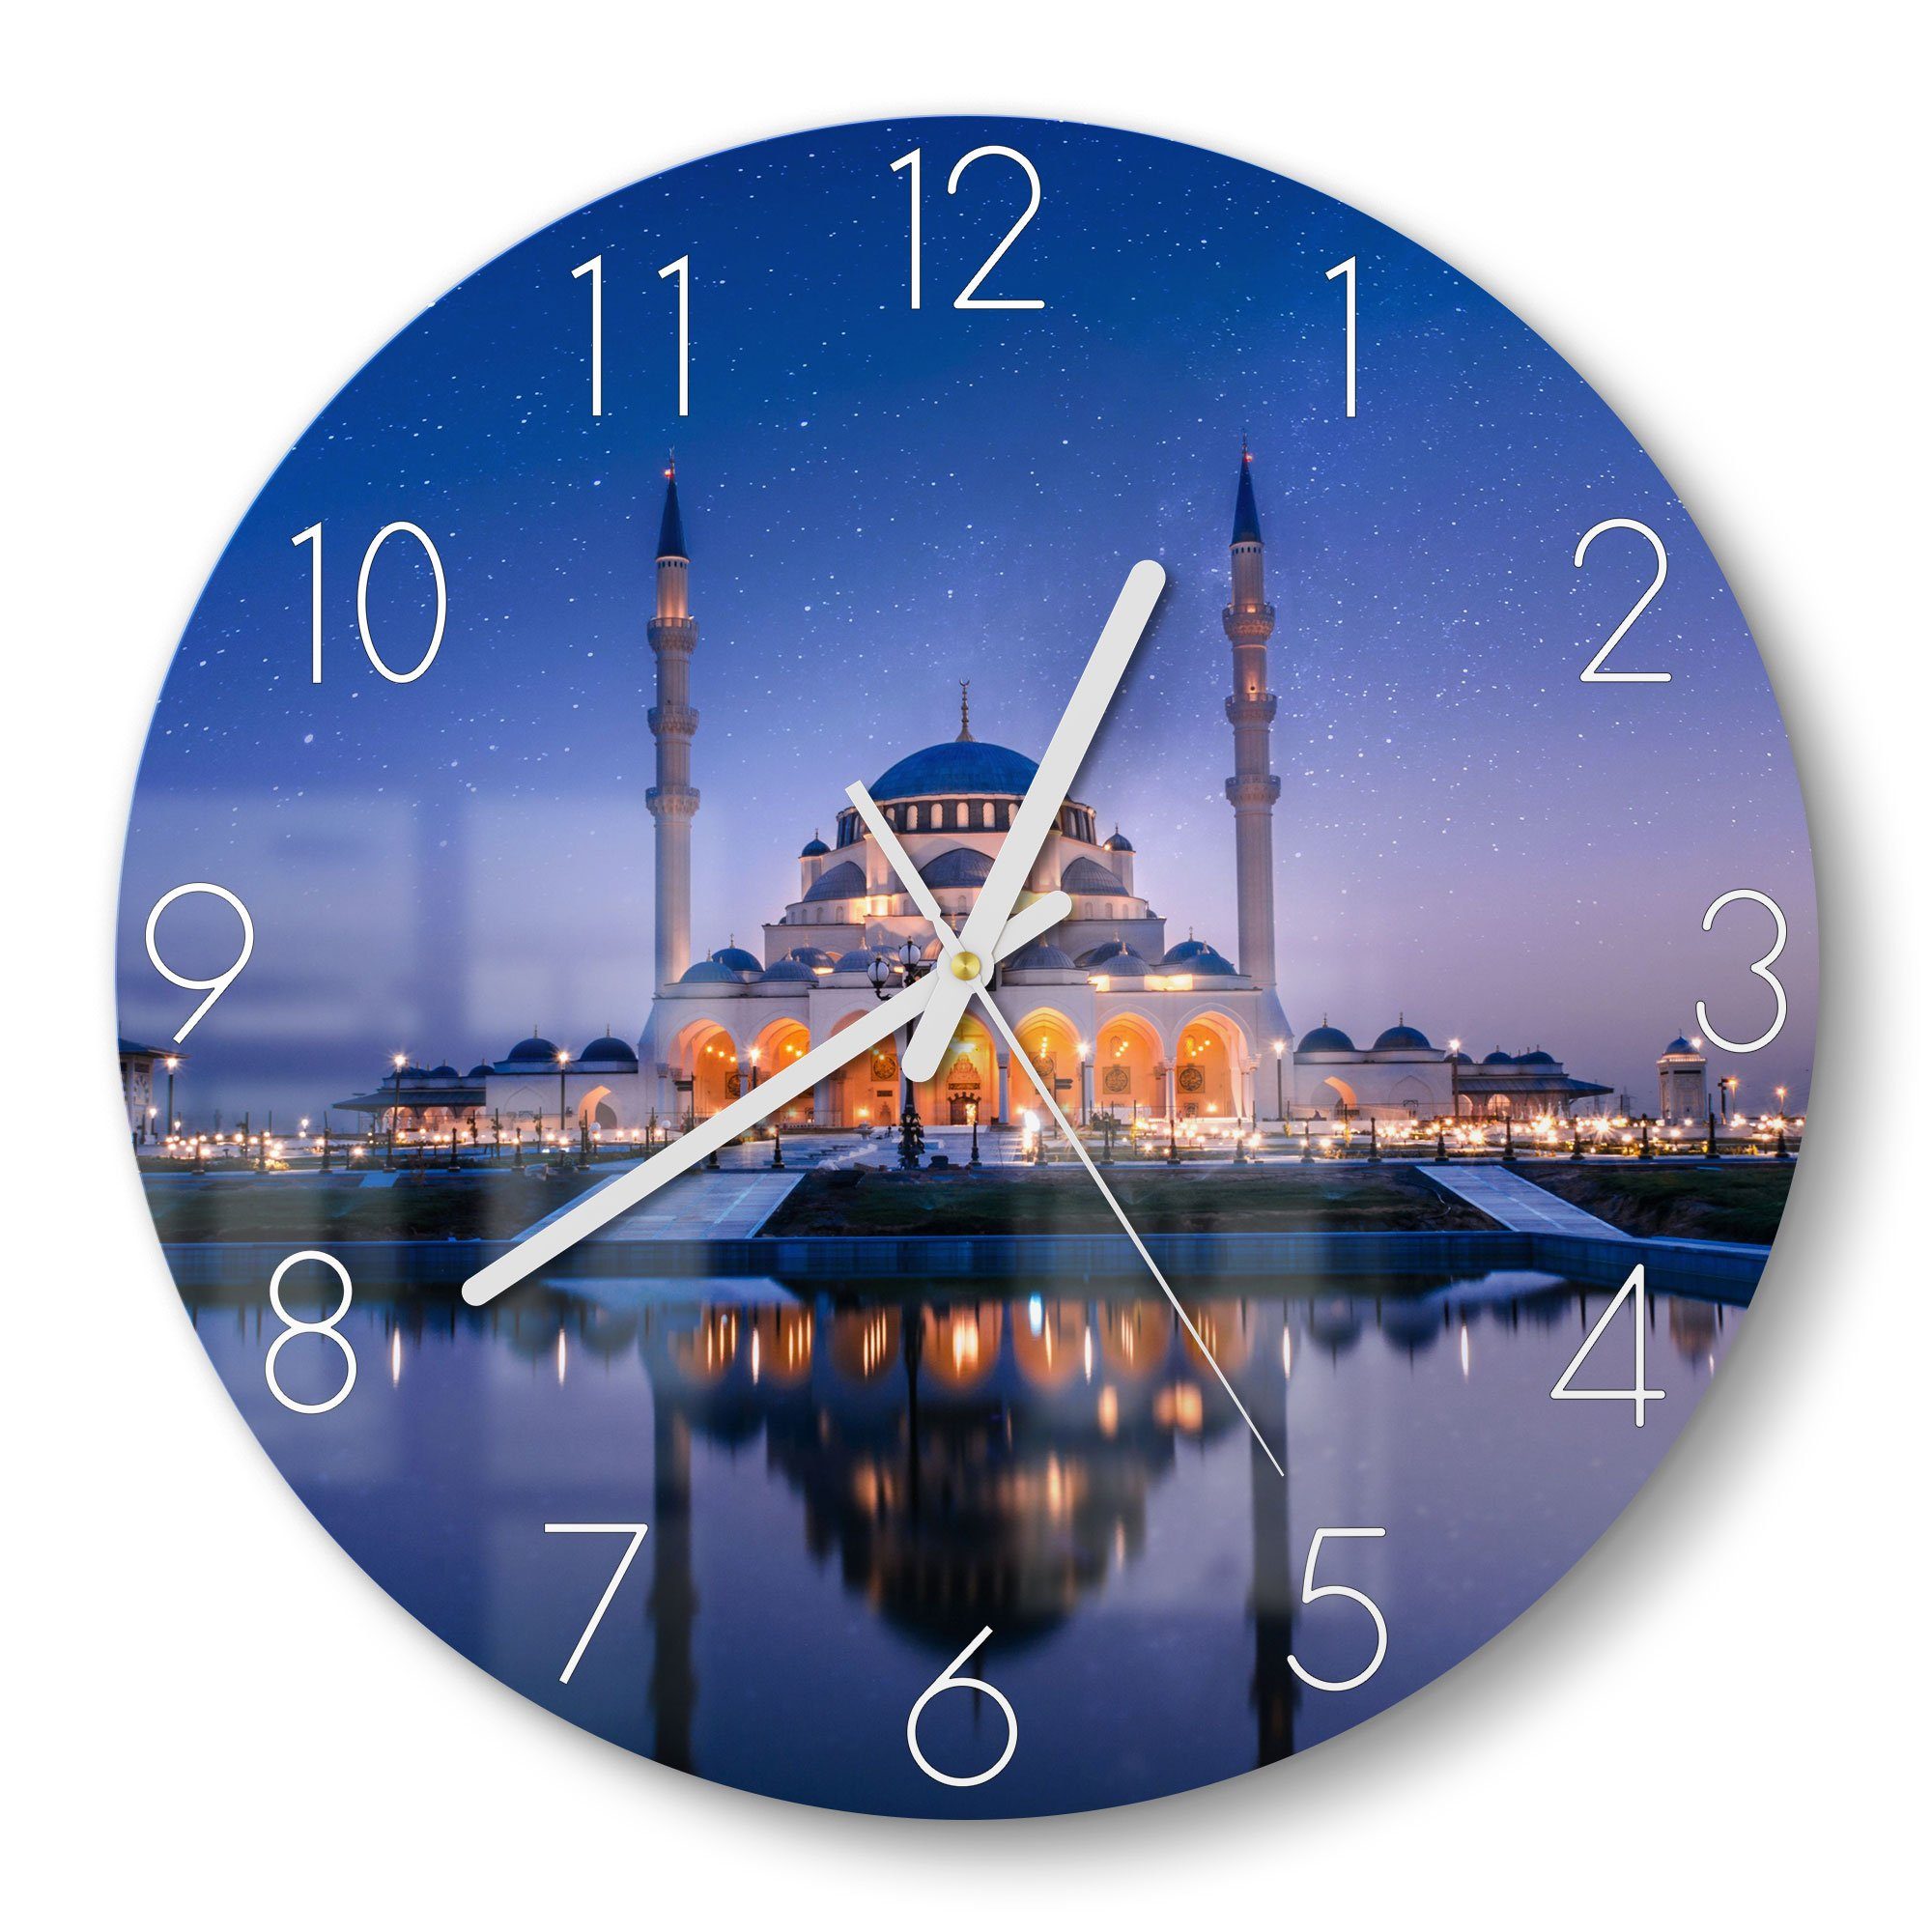 DEQORI Wanduhr 'Sharjah Moschee bei Nacht' (Glas Glasuhr modern Wand Uhr Design Küchenuhr)